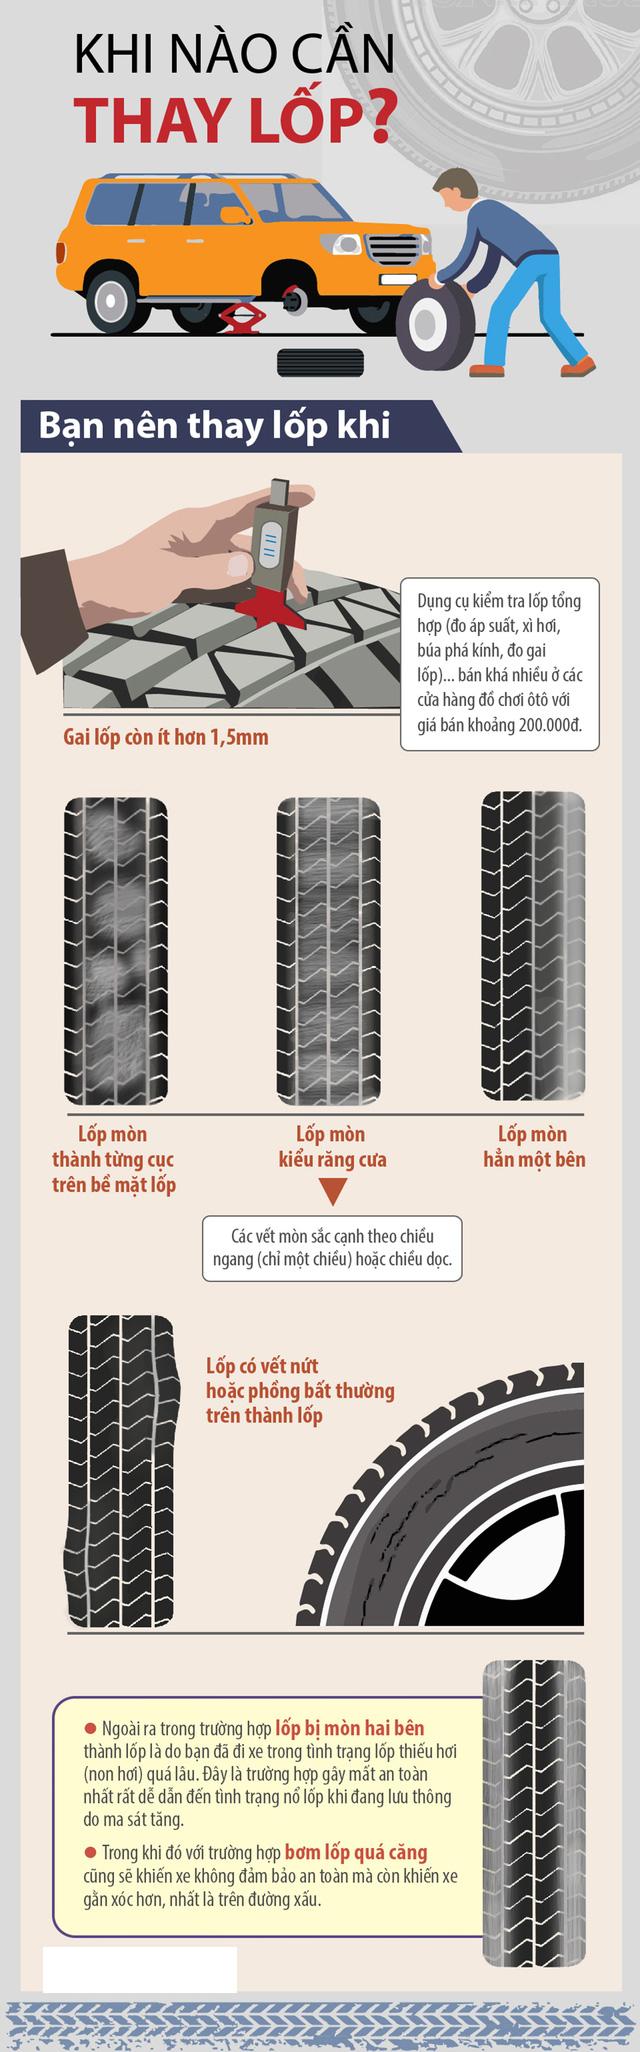 Khi nào nên thay lốp xe ô tô?